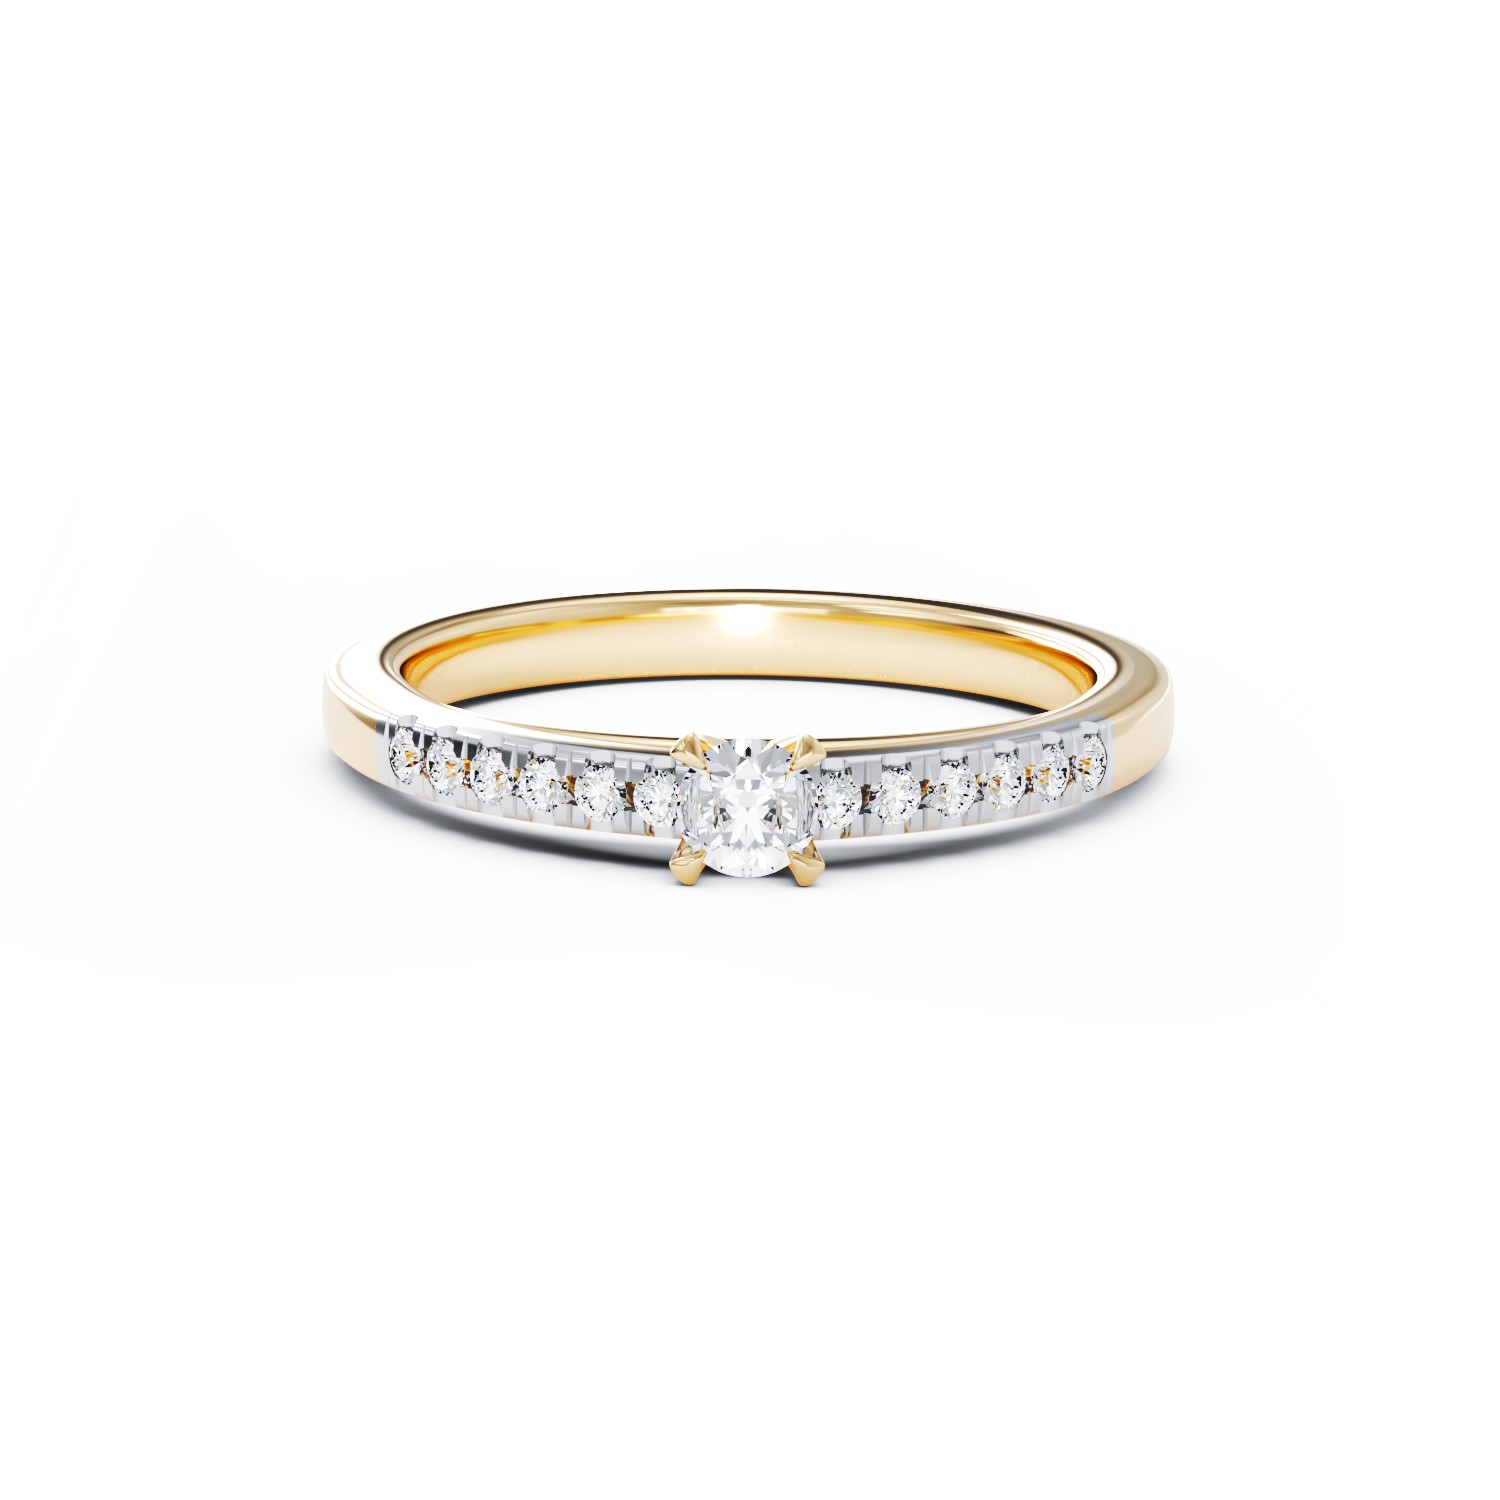 Eljegyzési gyűrű 18K-os sárga aranyból 0,24ct gyémánttal és 0,13ct gyémánttal. Gramm: 2,75